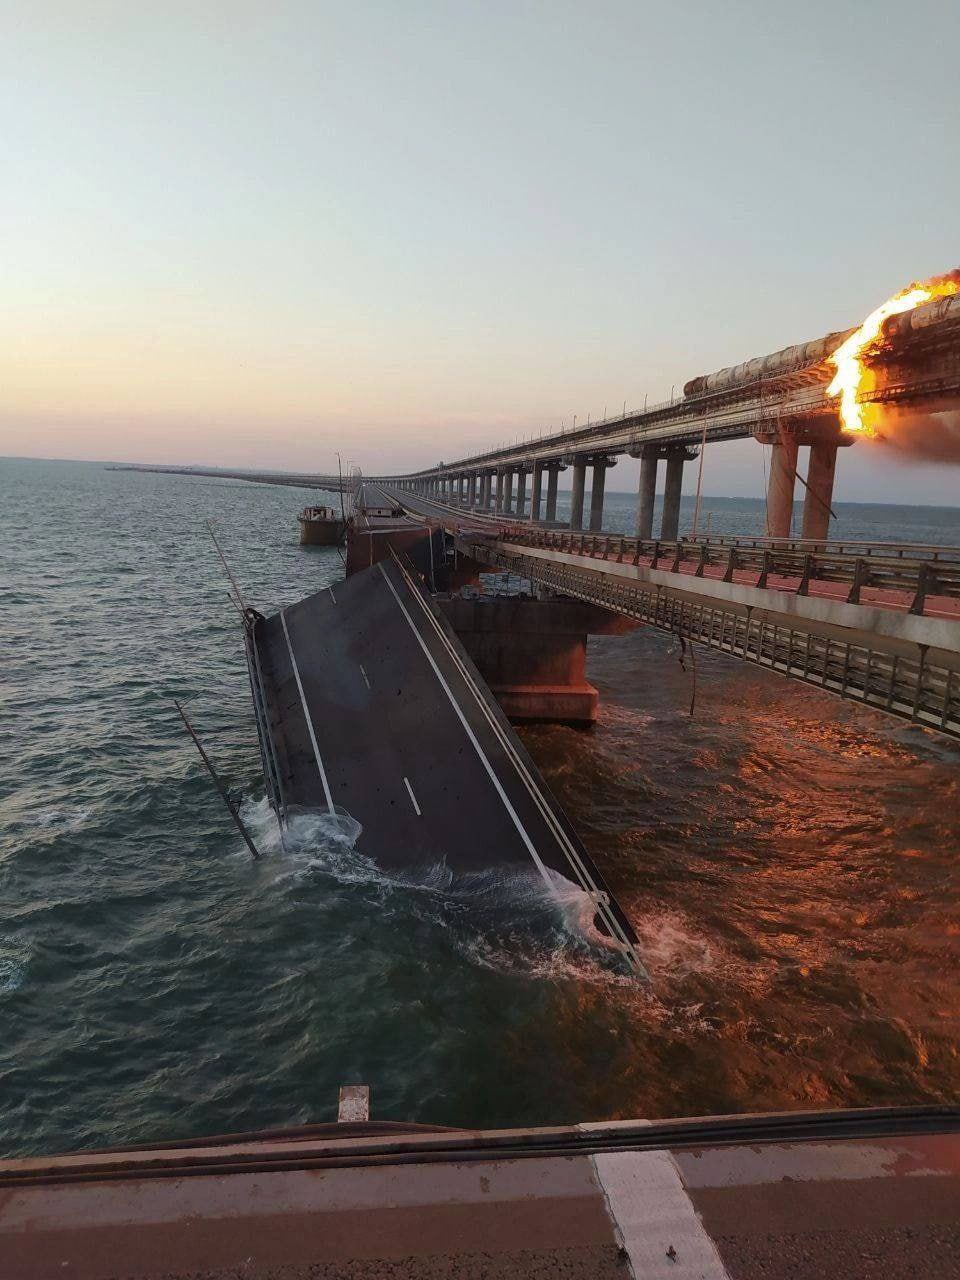 被俄羅斯佔領的烏克蘭克里米亞大橋橋體已經被大火燒斷，坍塌入海。   圖: 翻攝自 Rob Lee 推特 